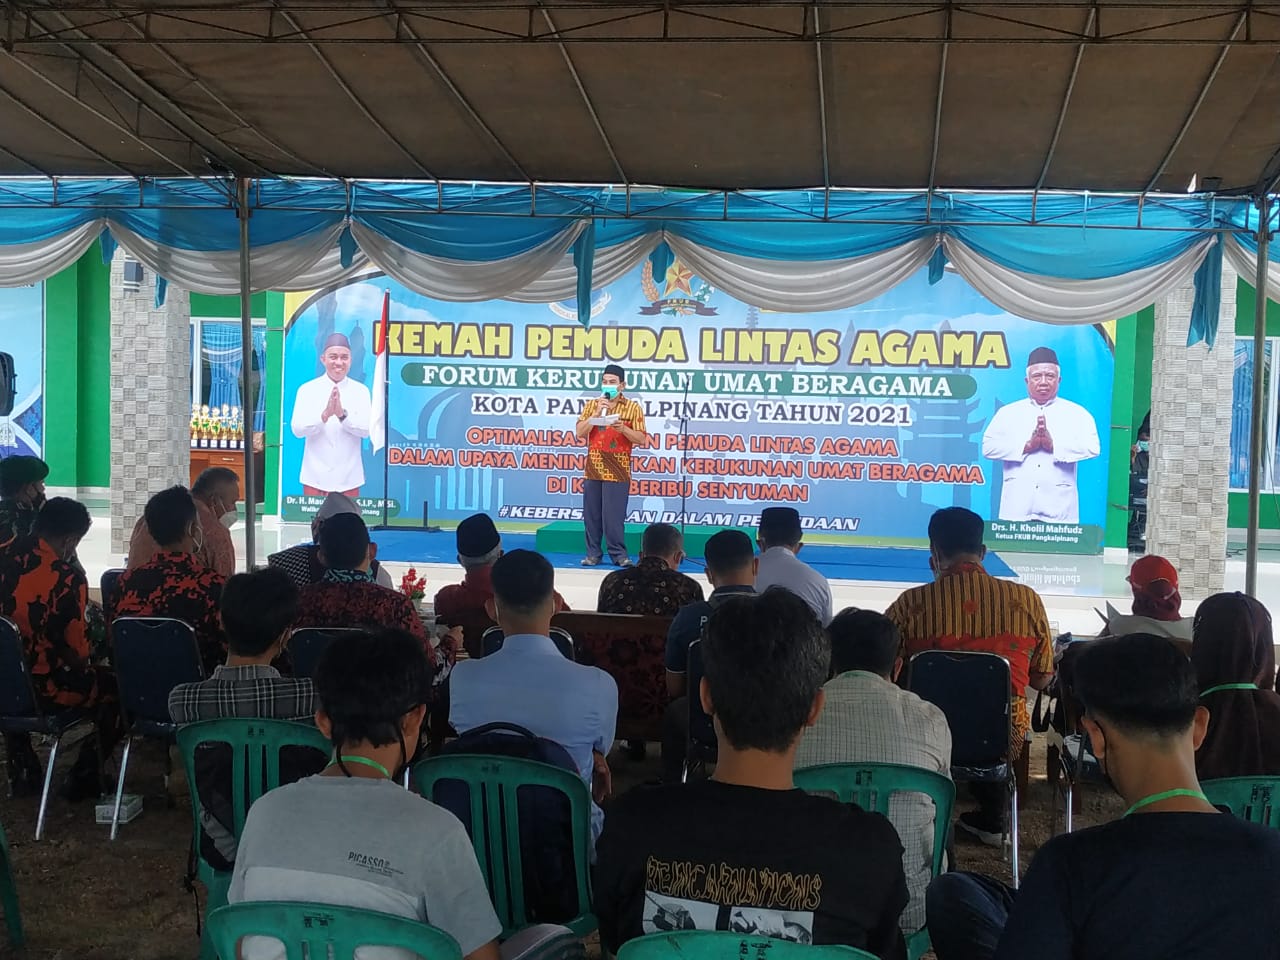 Peserta Kemah Pemuda Lintas Agama (KPLA) digelar Forum Kerukunan Umat Beragama (FKUB) Kota Pangkalpinang (doc. www.detikindonesia.id)